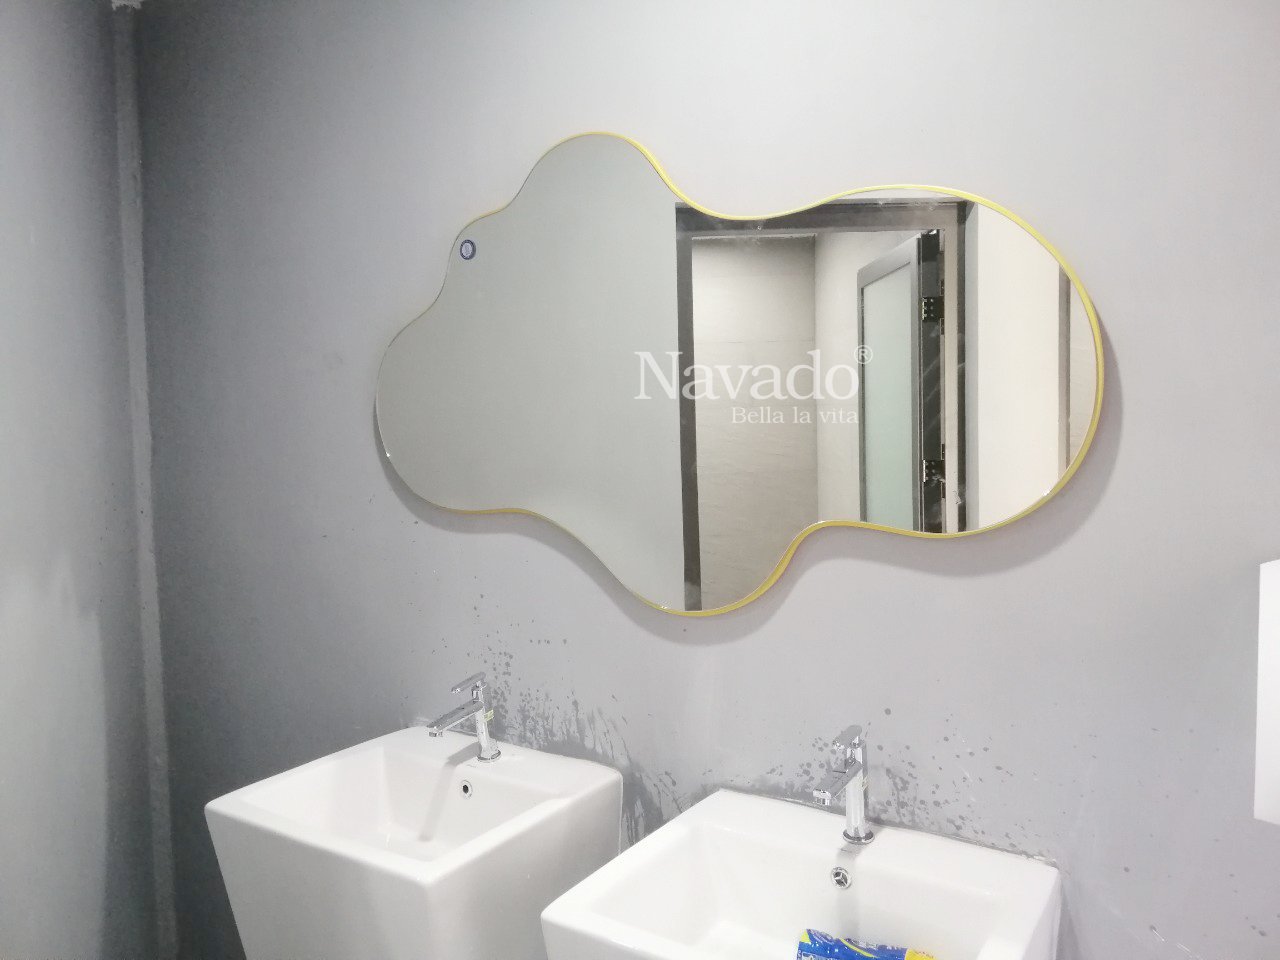 wall-art-cloud-bathroom-mirror